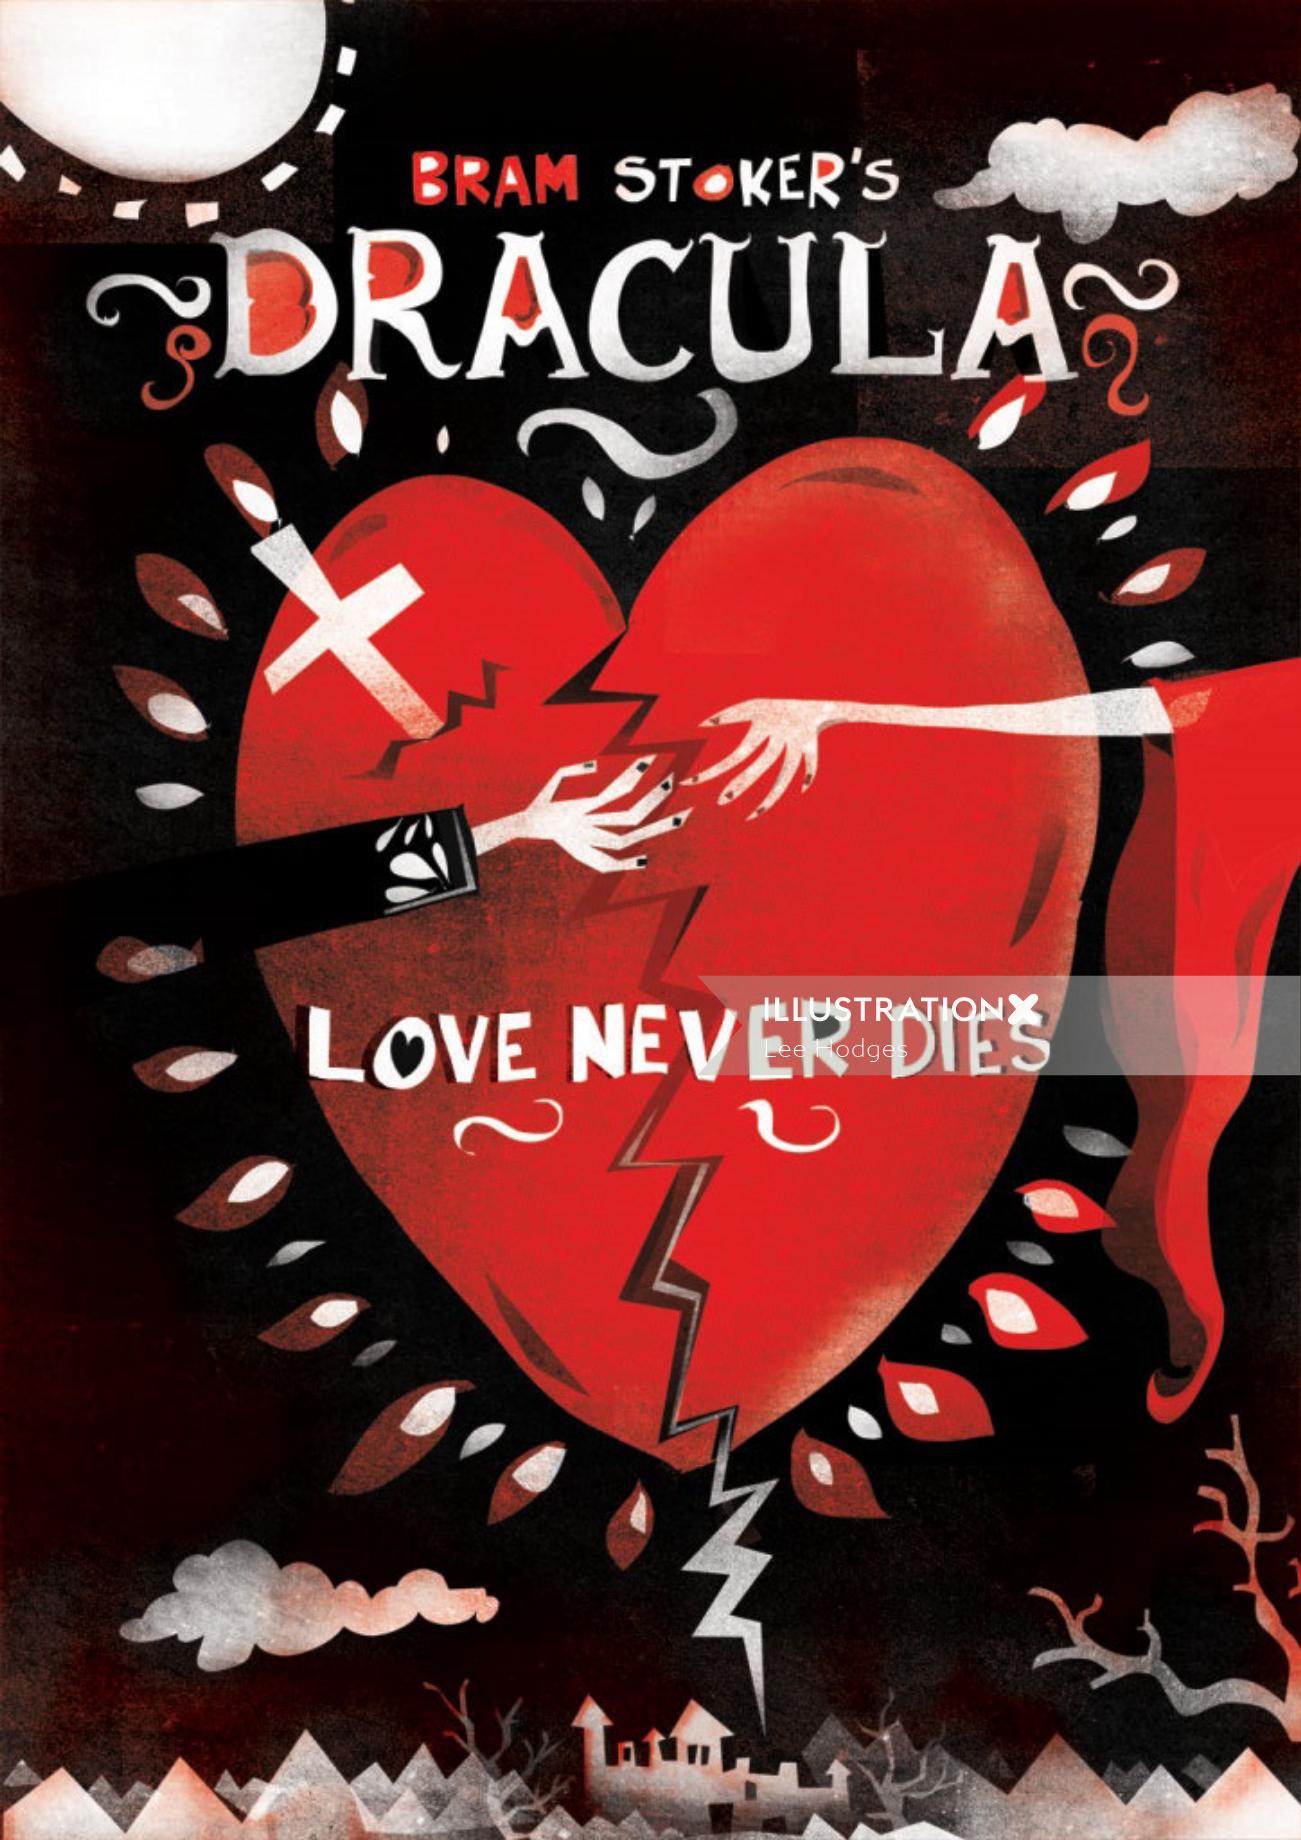 Bram Stoker's Dracula poster design by Lee Hodges